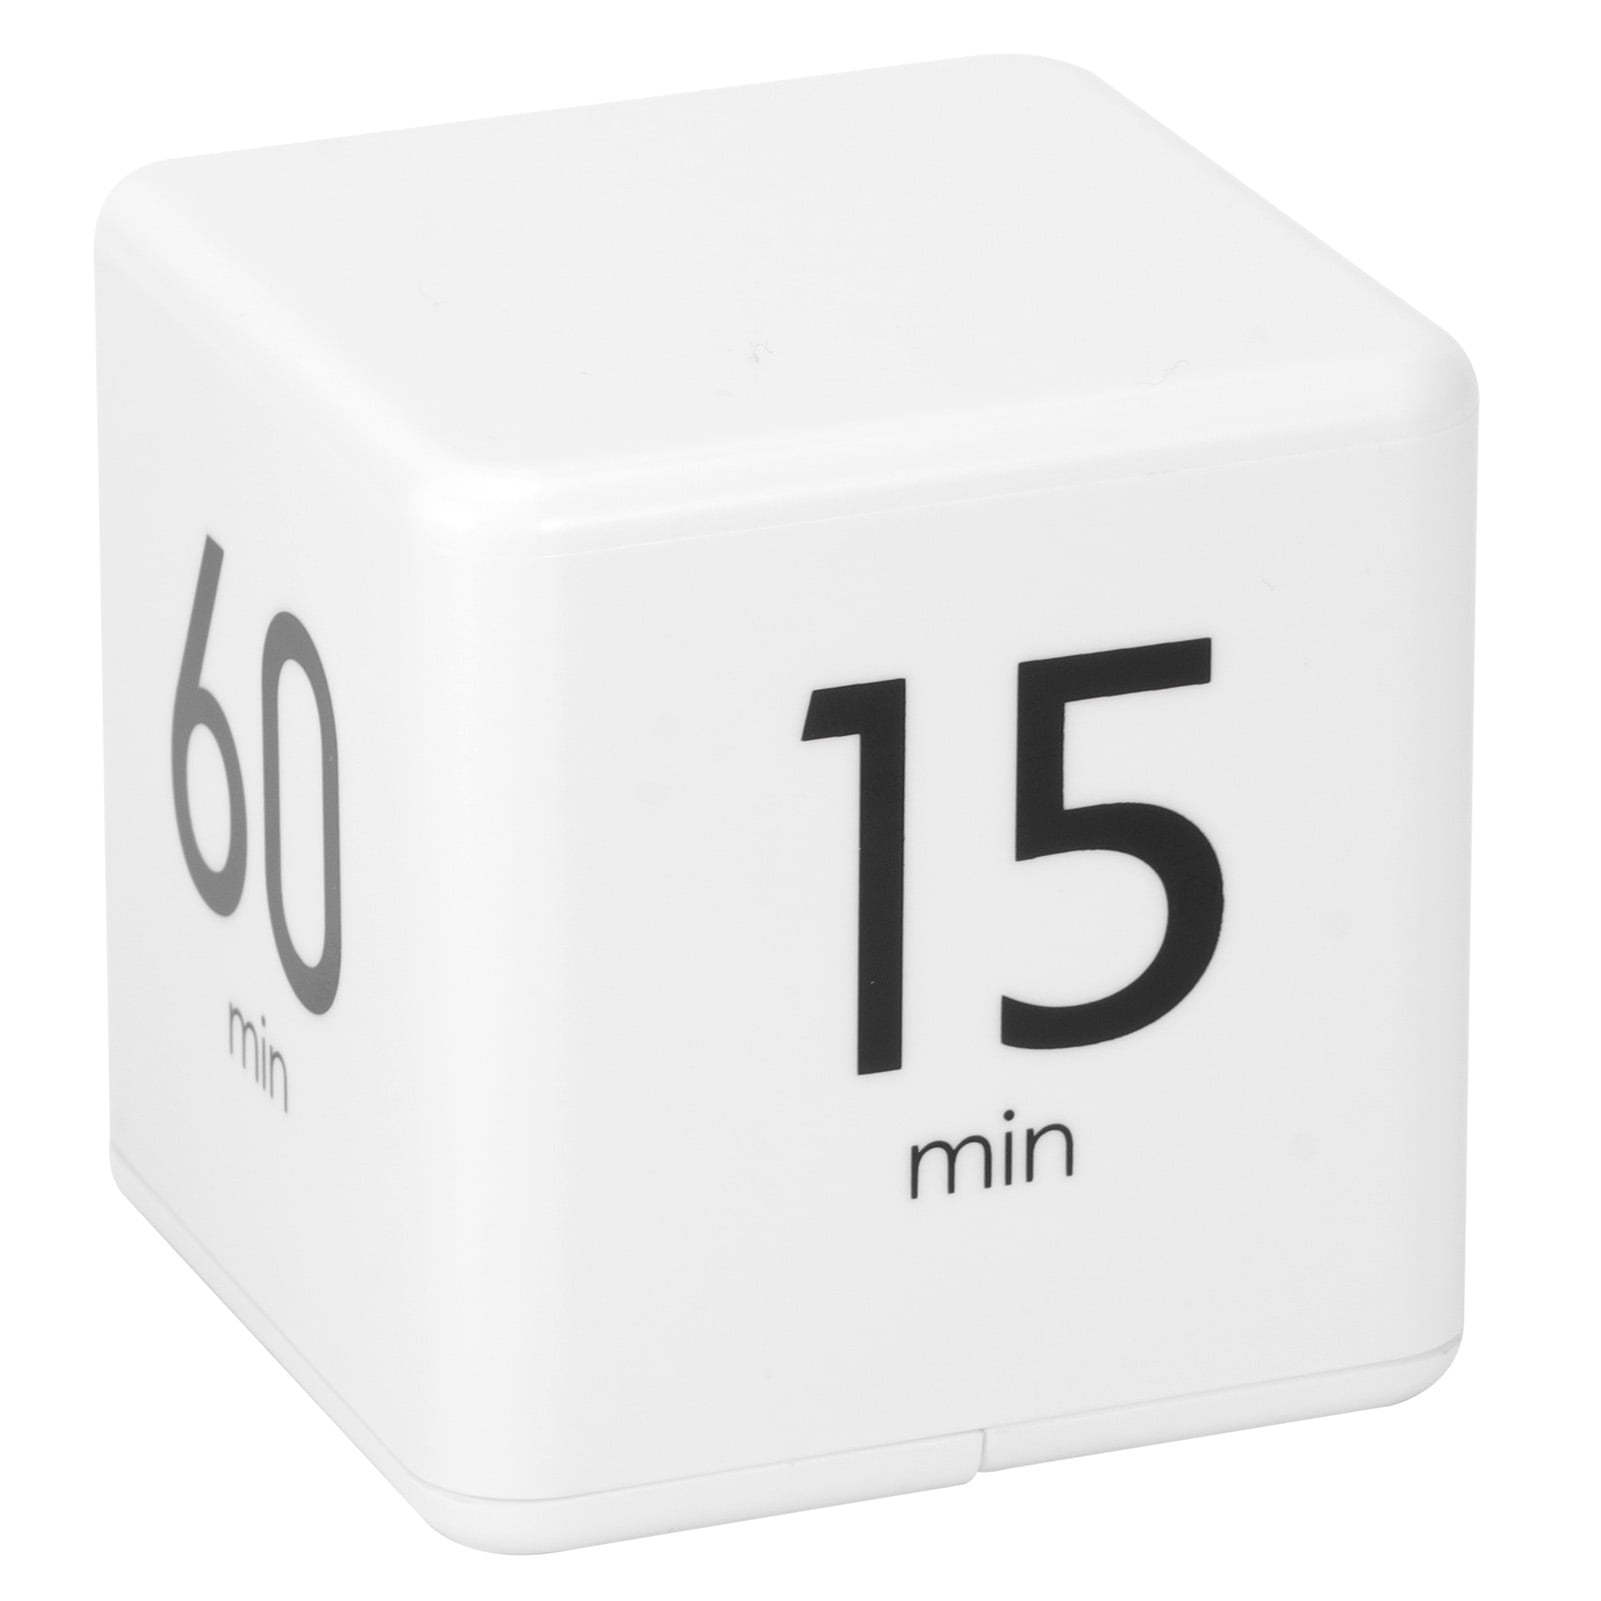 1 3 5 10 Cube Timer 15 20 30 60 Minuti Intervallo Pomodoro Timer per Studio Cucina Allenamento Gioco,Bianco